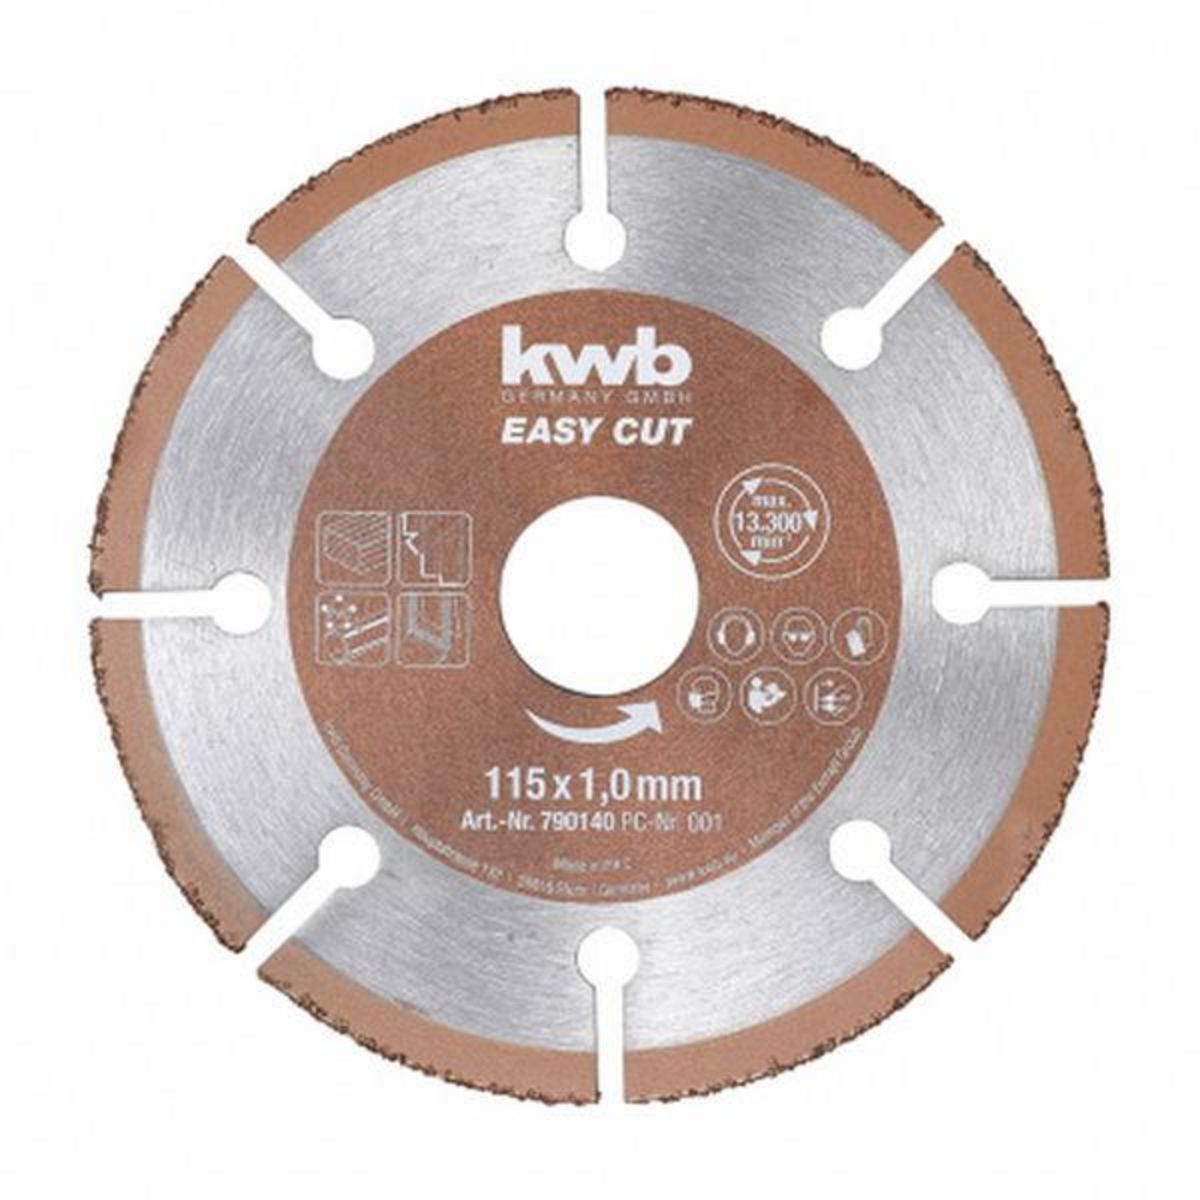 KWB Disque multi-matériaux Easy cut 115mm